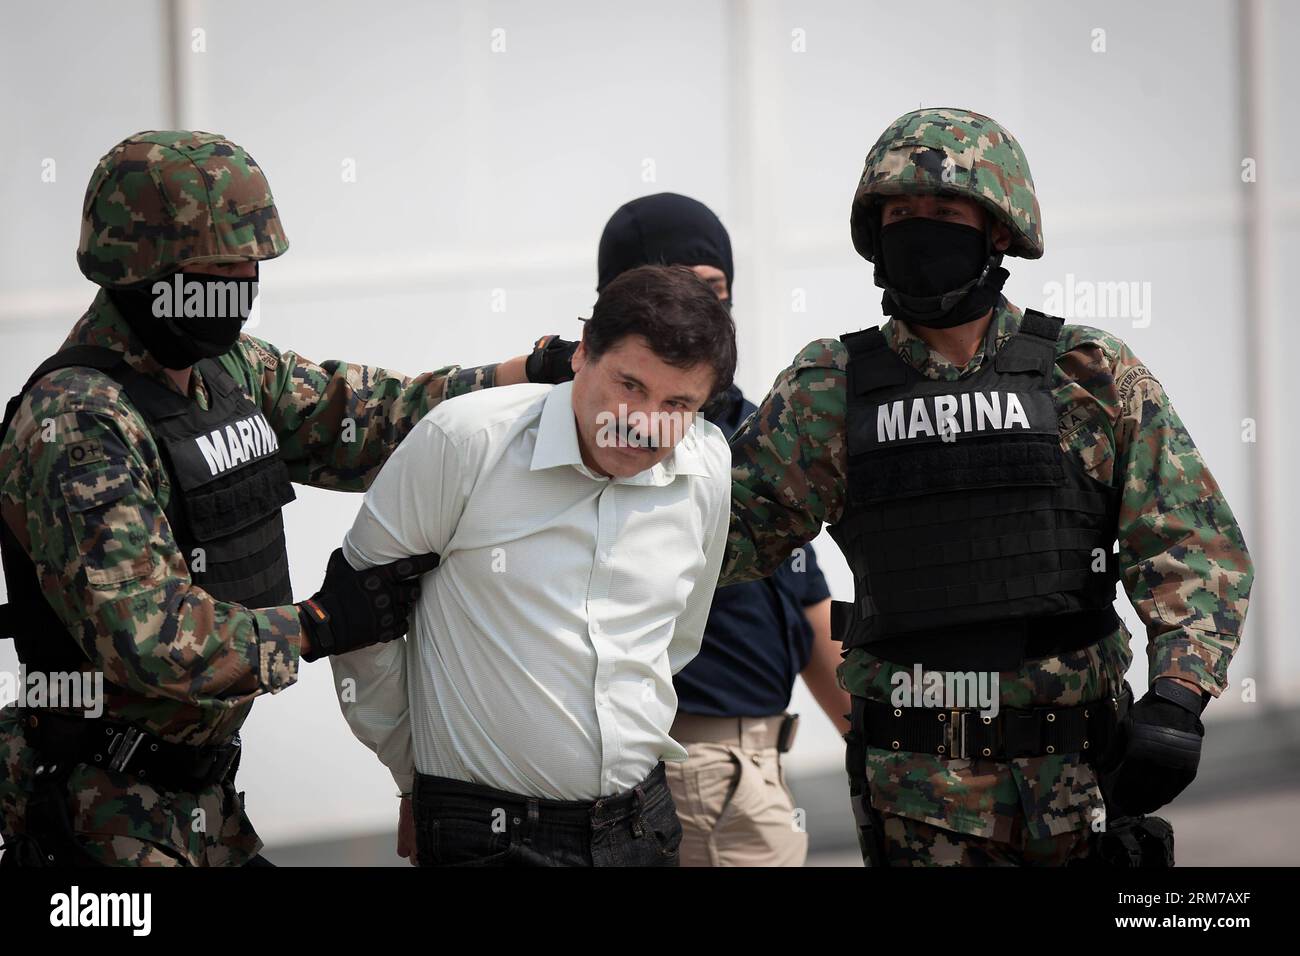 (140222) -- MEXICO, 22 février 2014 (Xinhua) -- des soldats de la Marine mexicaine escortent Joaquin Guzman Loera (C), alias El Chapo Guzman , chef du cartel Sinaloa, lors de sa présentation devant la presse, au hangar de la Marine mexicaine à Mexico, capitale du Mexique, le 22 février 2014. Le président mexicain Enrique Pena Nieto a confirmé samedi la capture du seigneur de la drogue le plus recherché au monde, Joaquin Guzman Loera, connu sous le nom d'El Chapo, dans la station balnéaire pacifique de Mazatlan. (Xinhua/Pedro Mera) (ce) (ah) MEXICO-SINALOA-DRUG Lord-CAPTUERE PUBLICATIONxNOTxINxCHN Mexico 22 2014 février XINHUA Marine MEXICAINE Banque D'Images